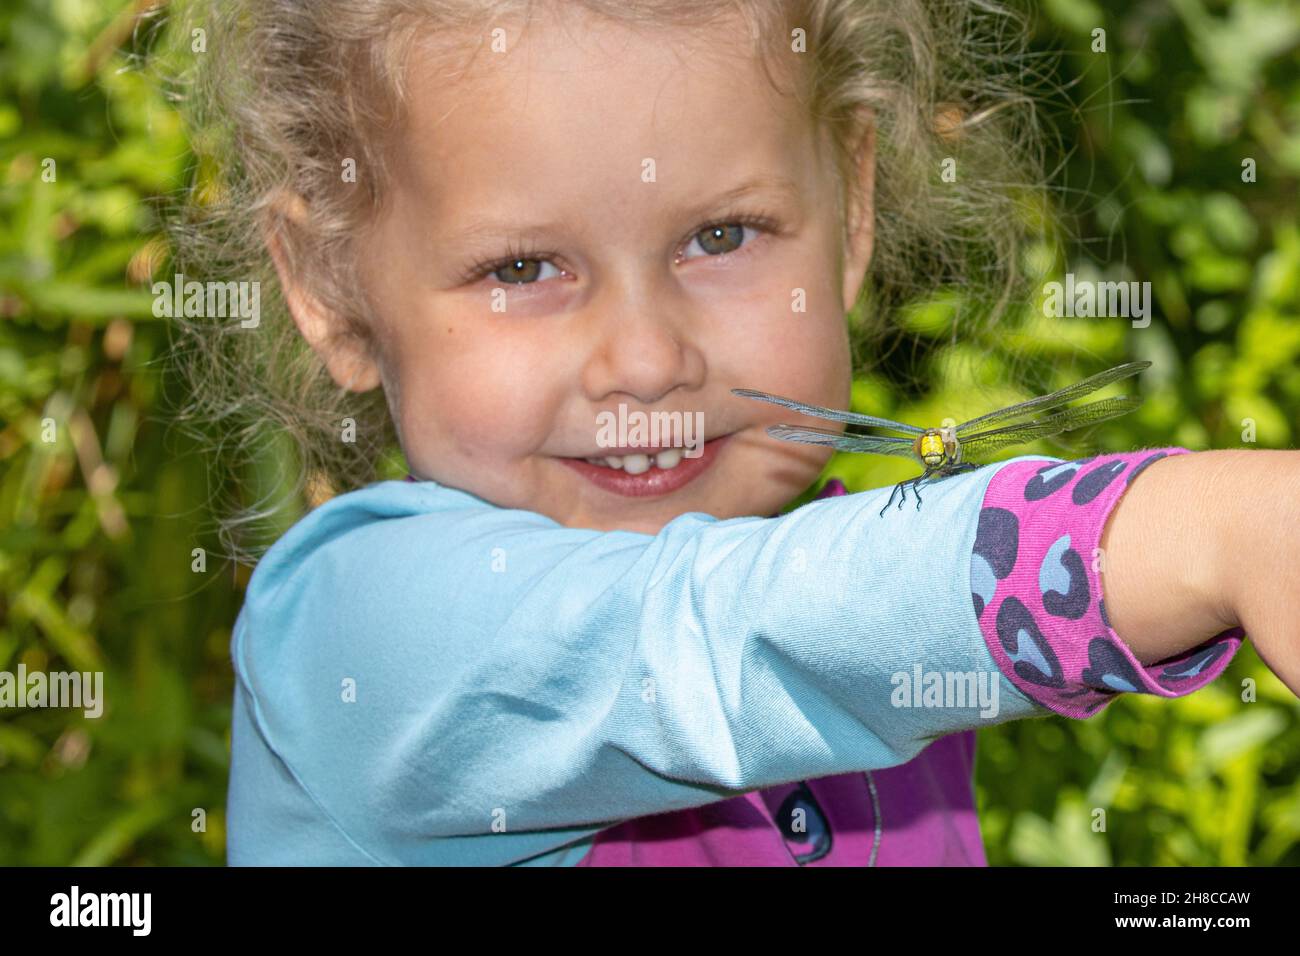 Darner bleu-vert, aeshna du sud, aubérante du sud (Aeshna cyanoa), petite fille souriante avec une libellule de l'aubéenne sur son bras, Allemagne Banque D'Images